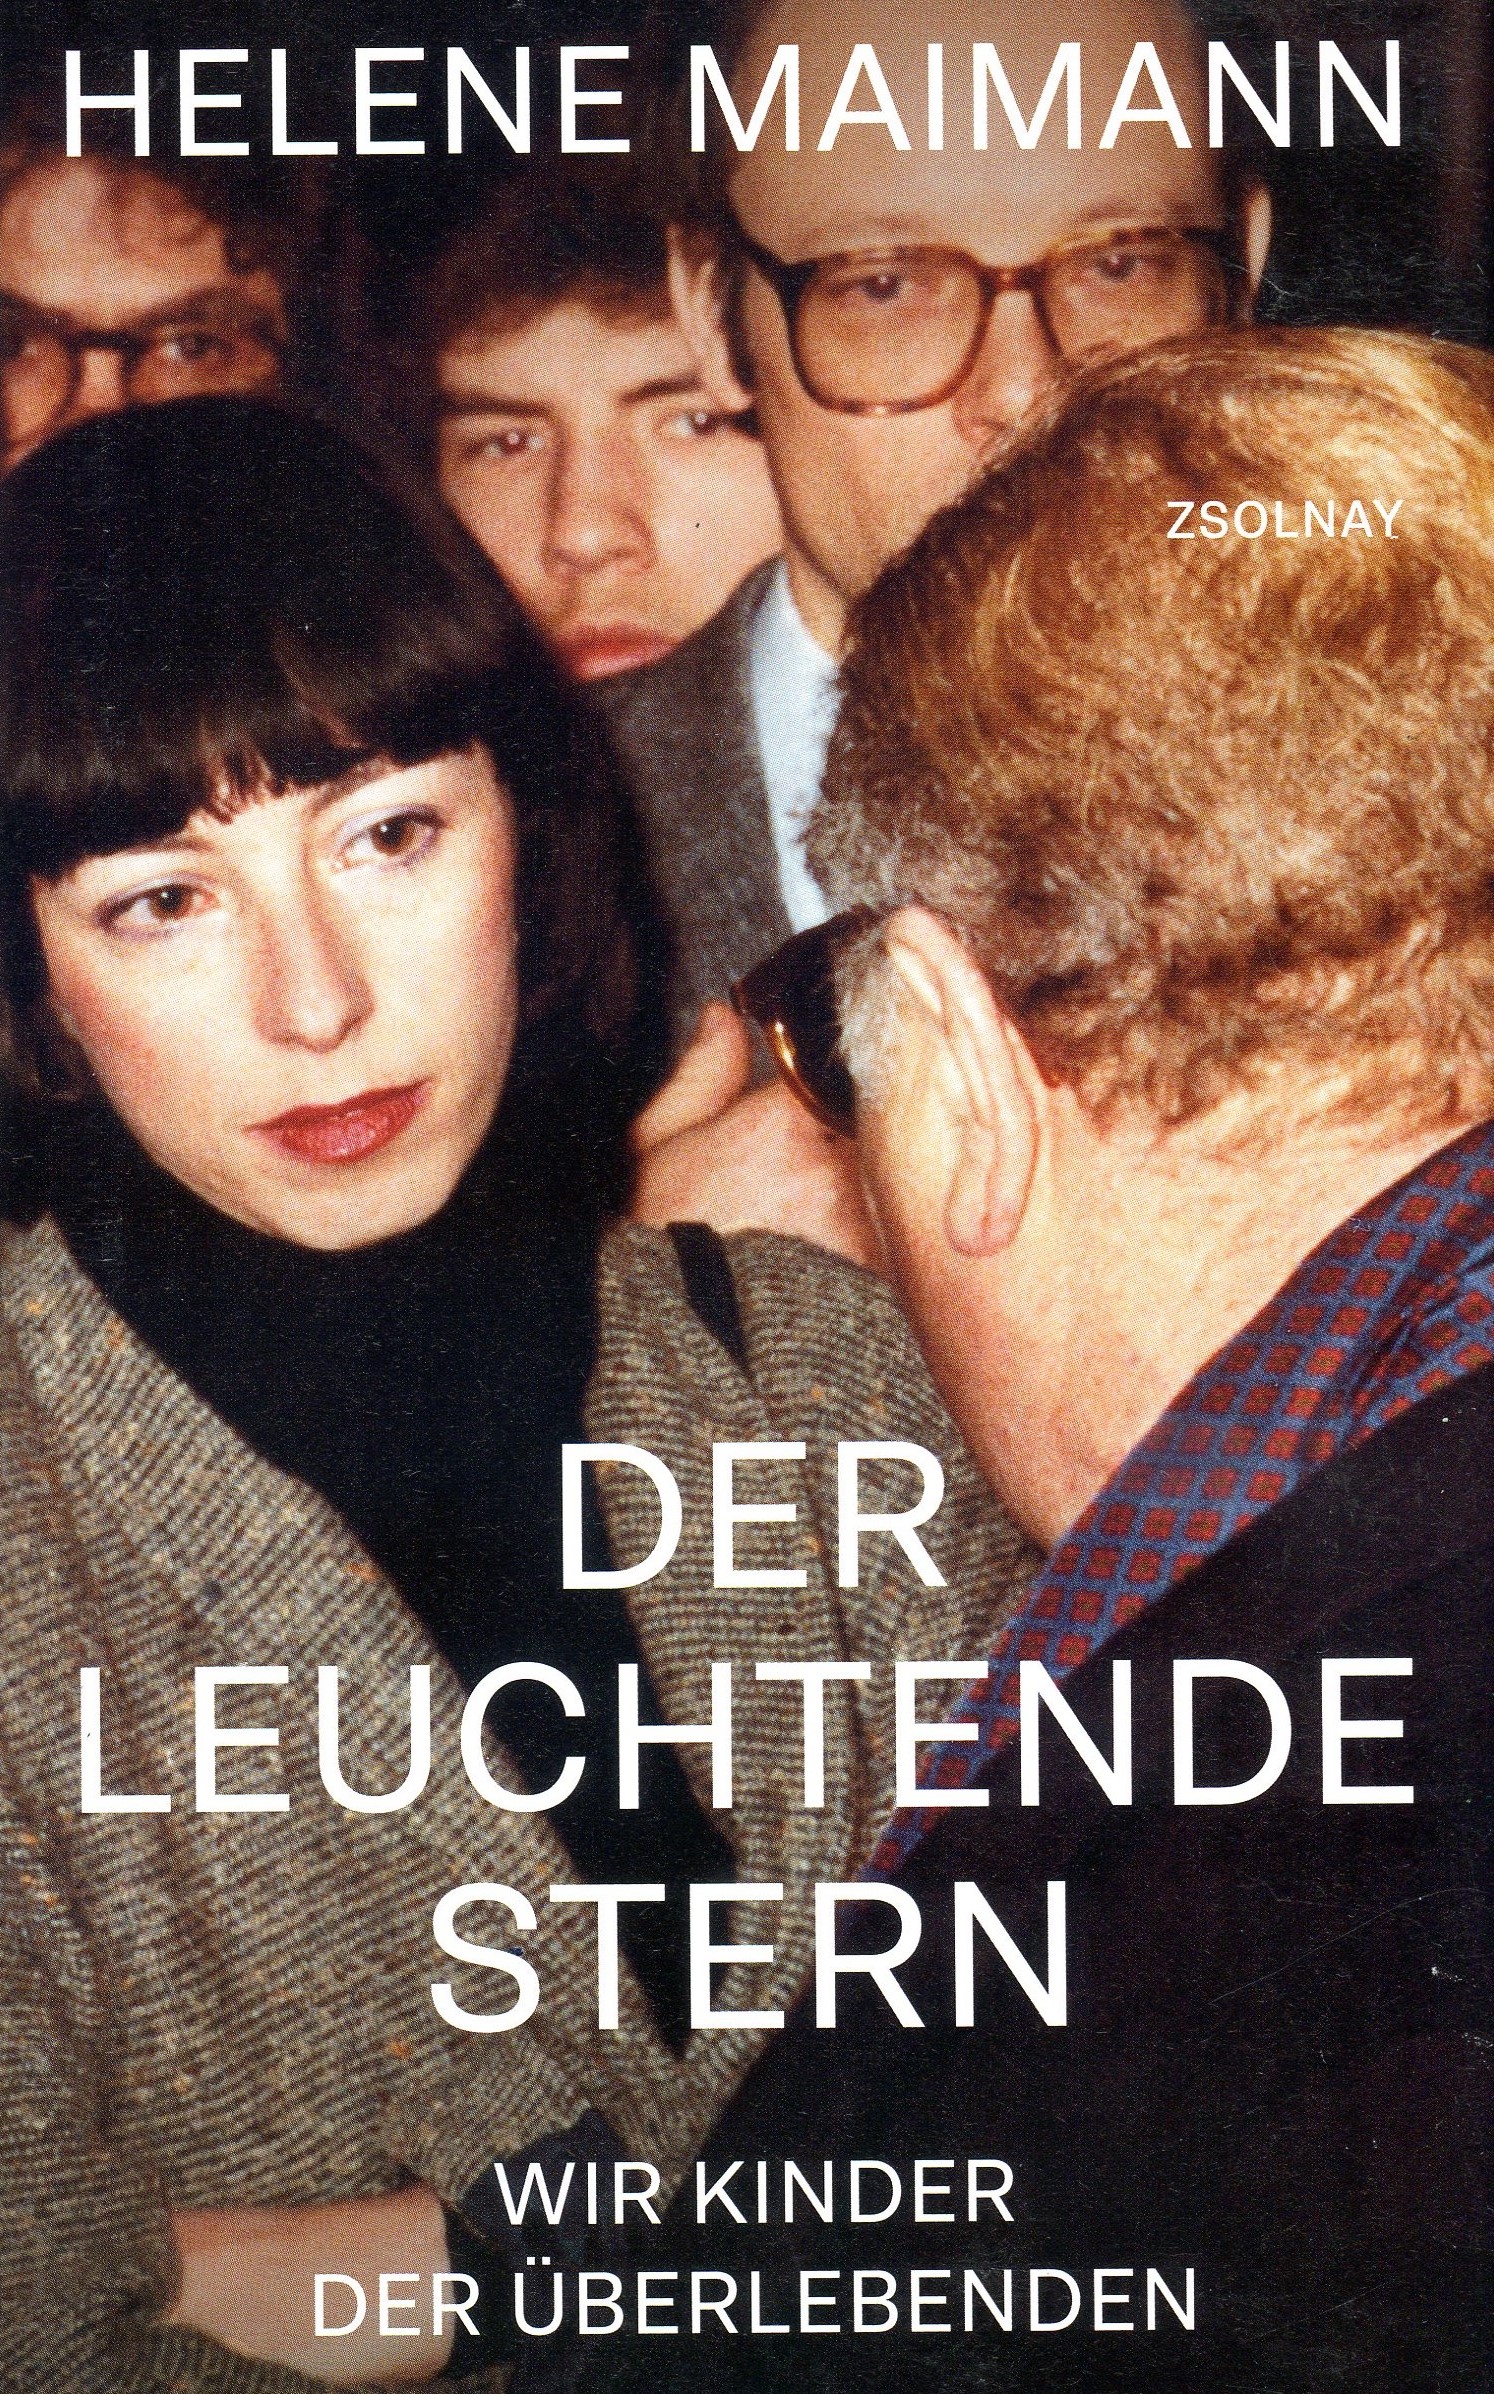 Cover Maimann Leuchtende Stern007.jpg